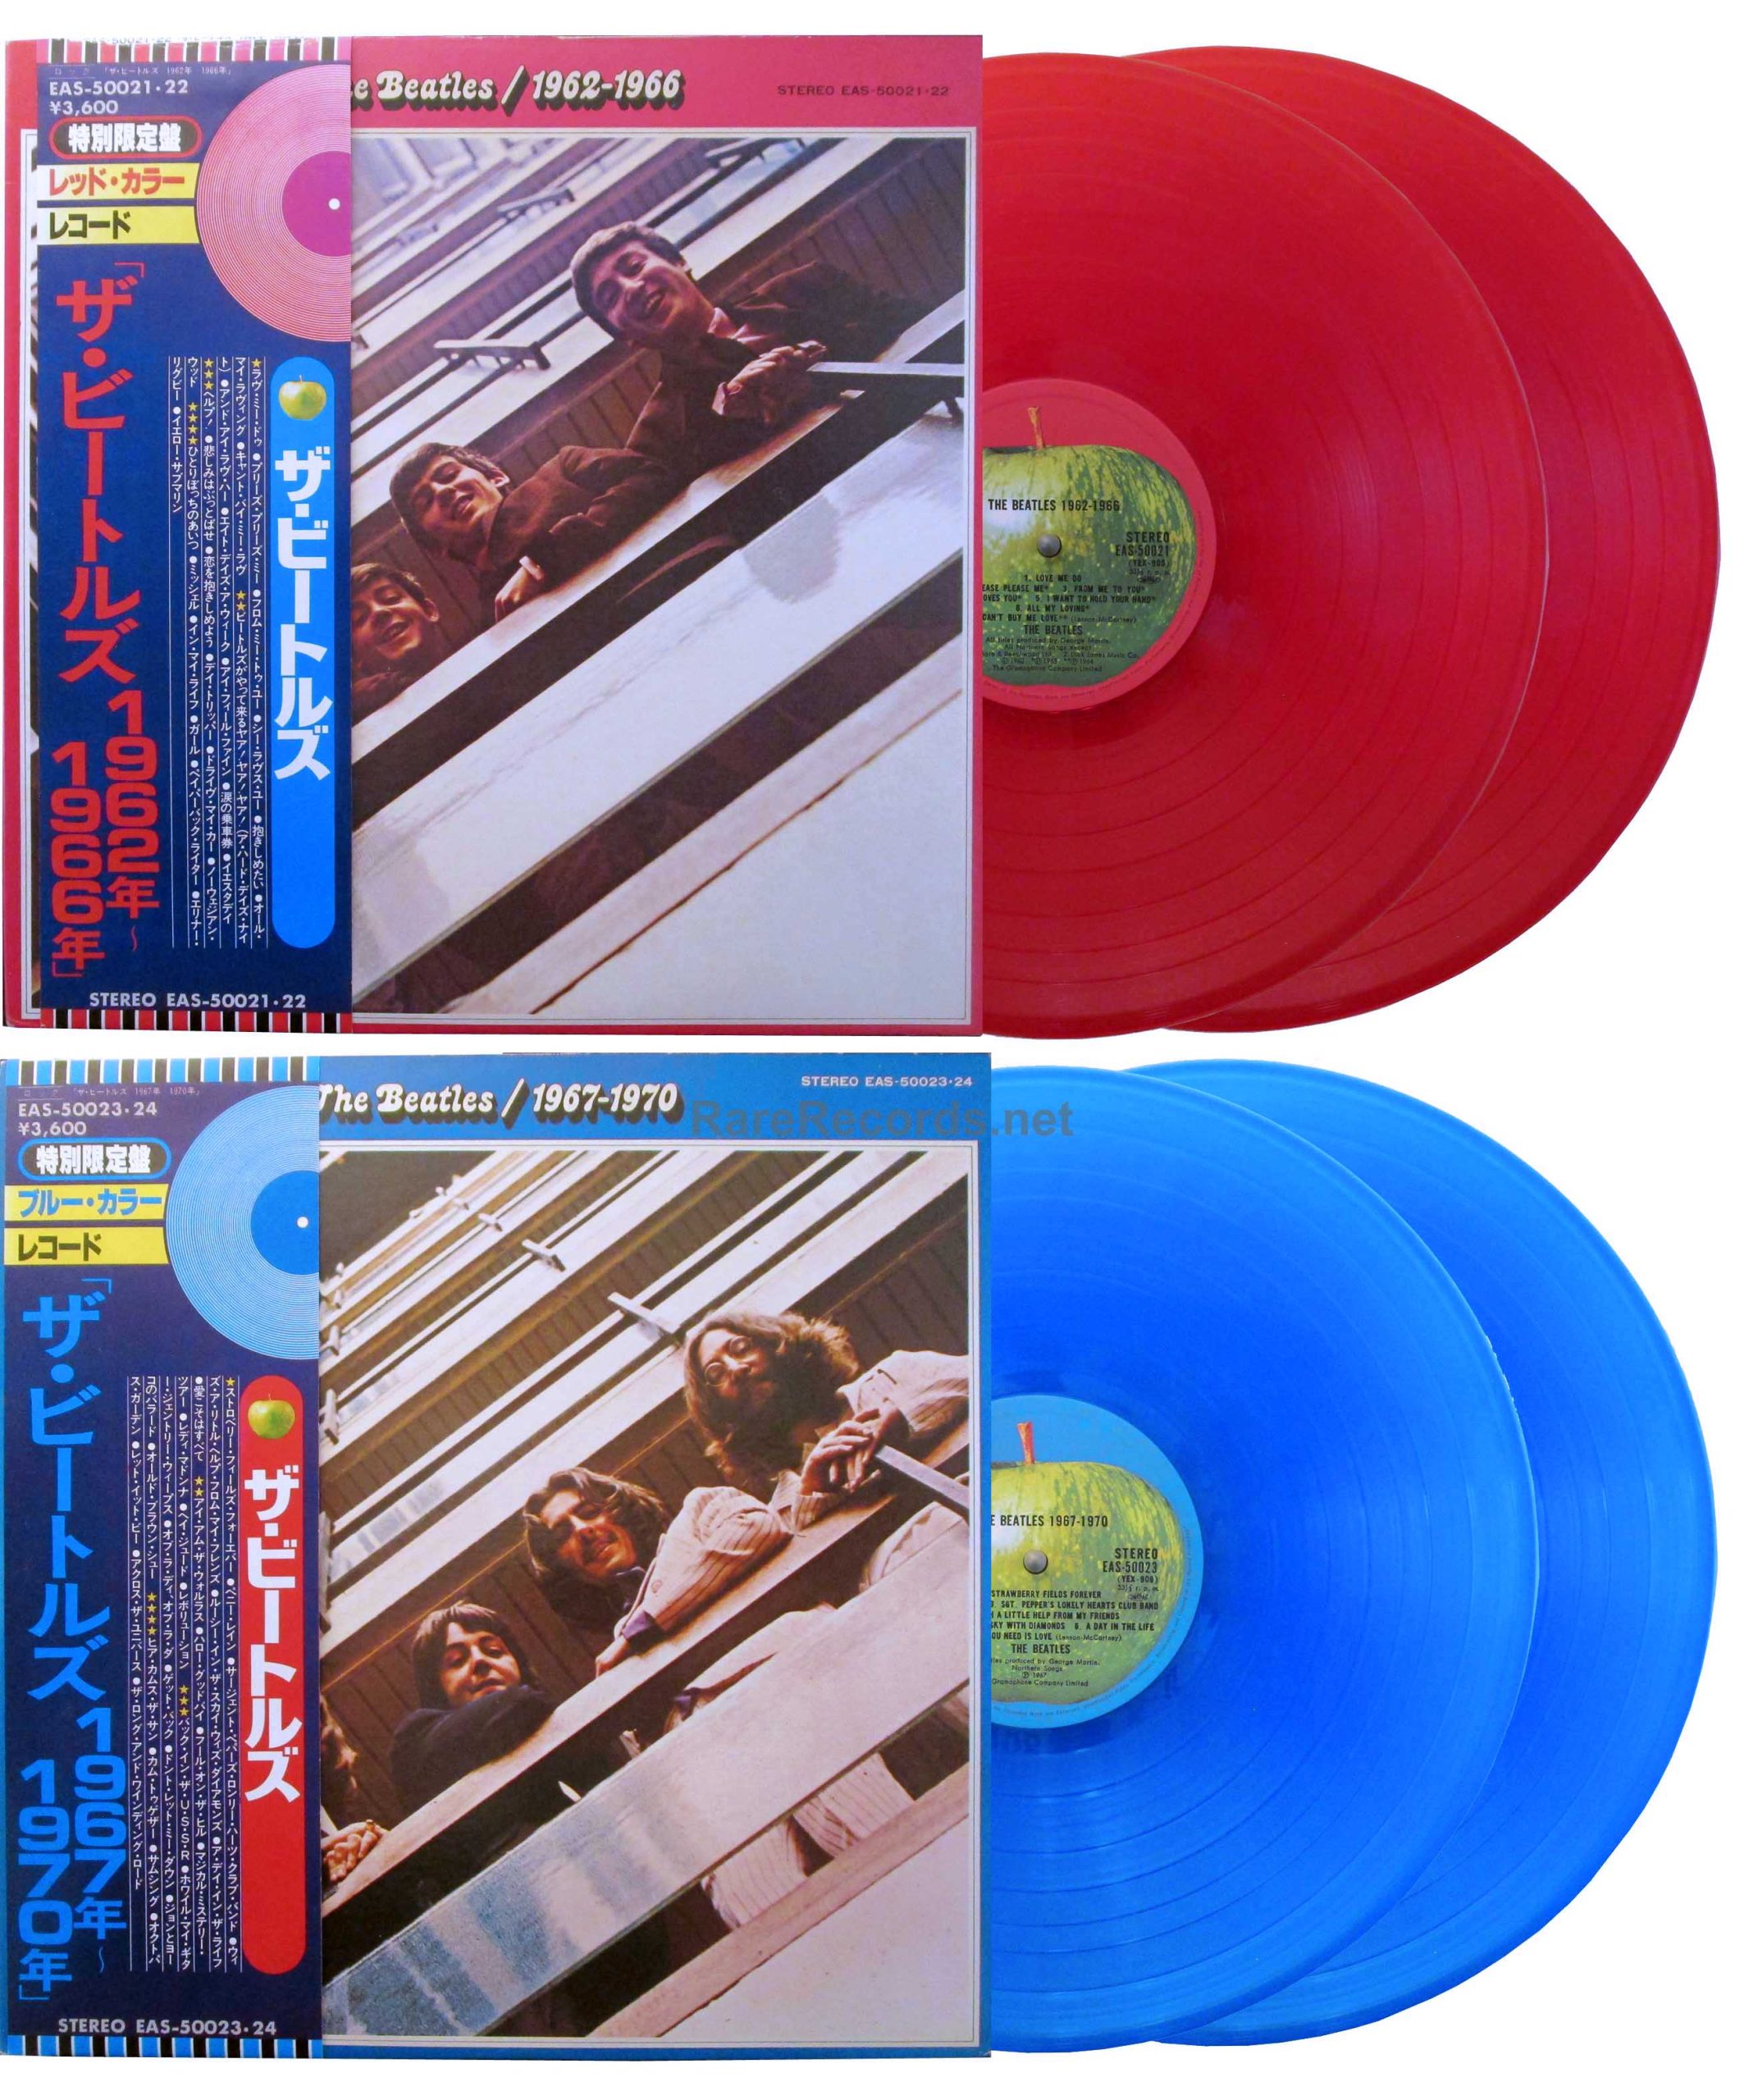 1962-1966/1967-1970 Japan red/blue vinyl 4 LP set with obi